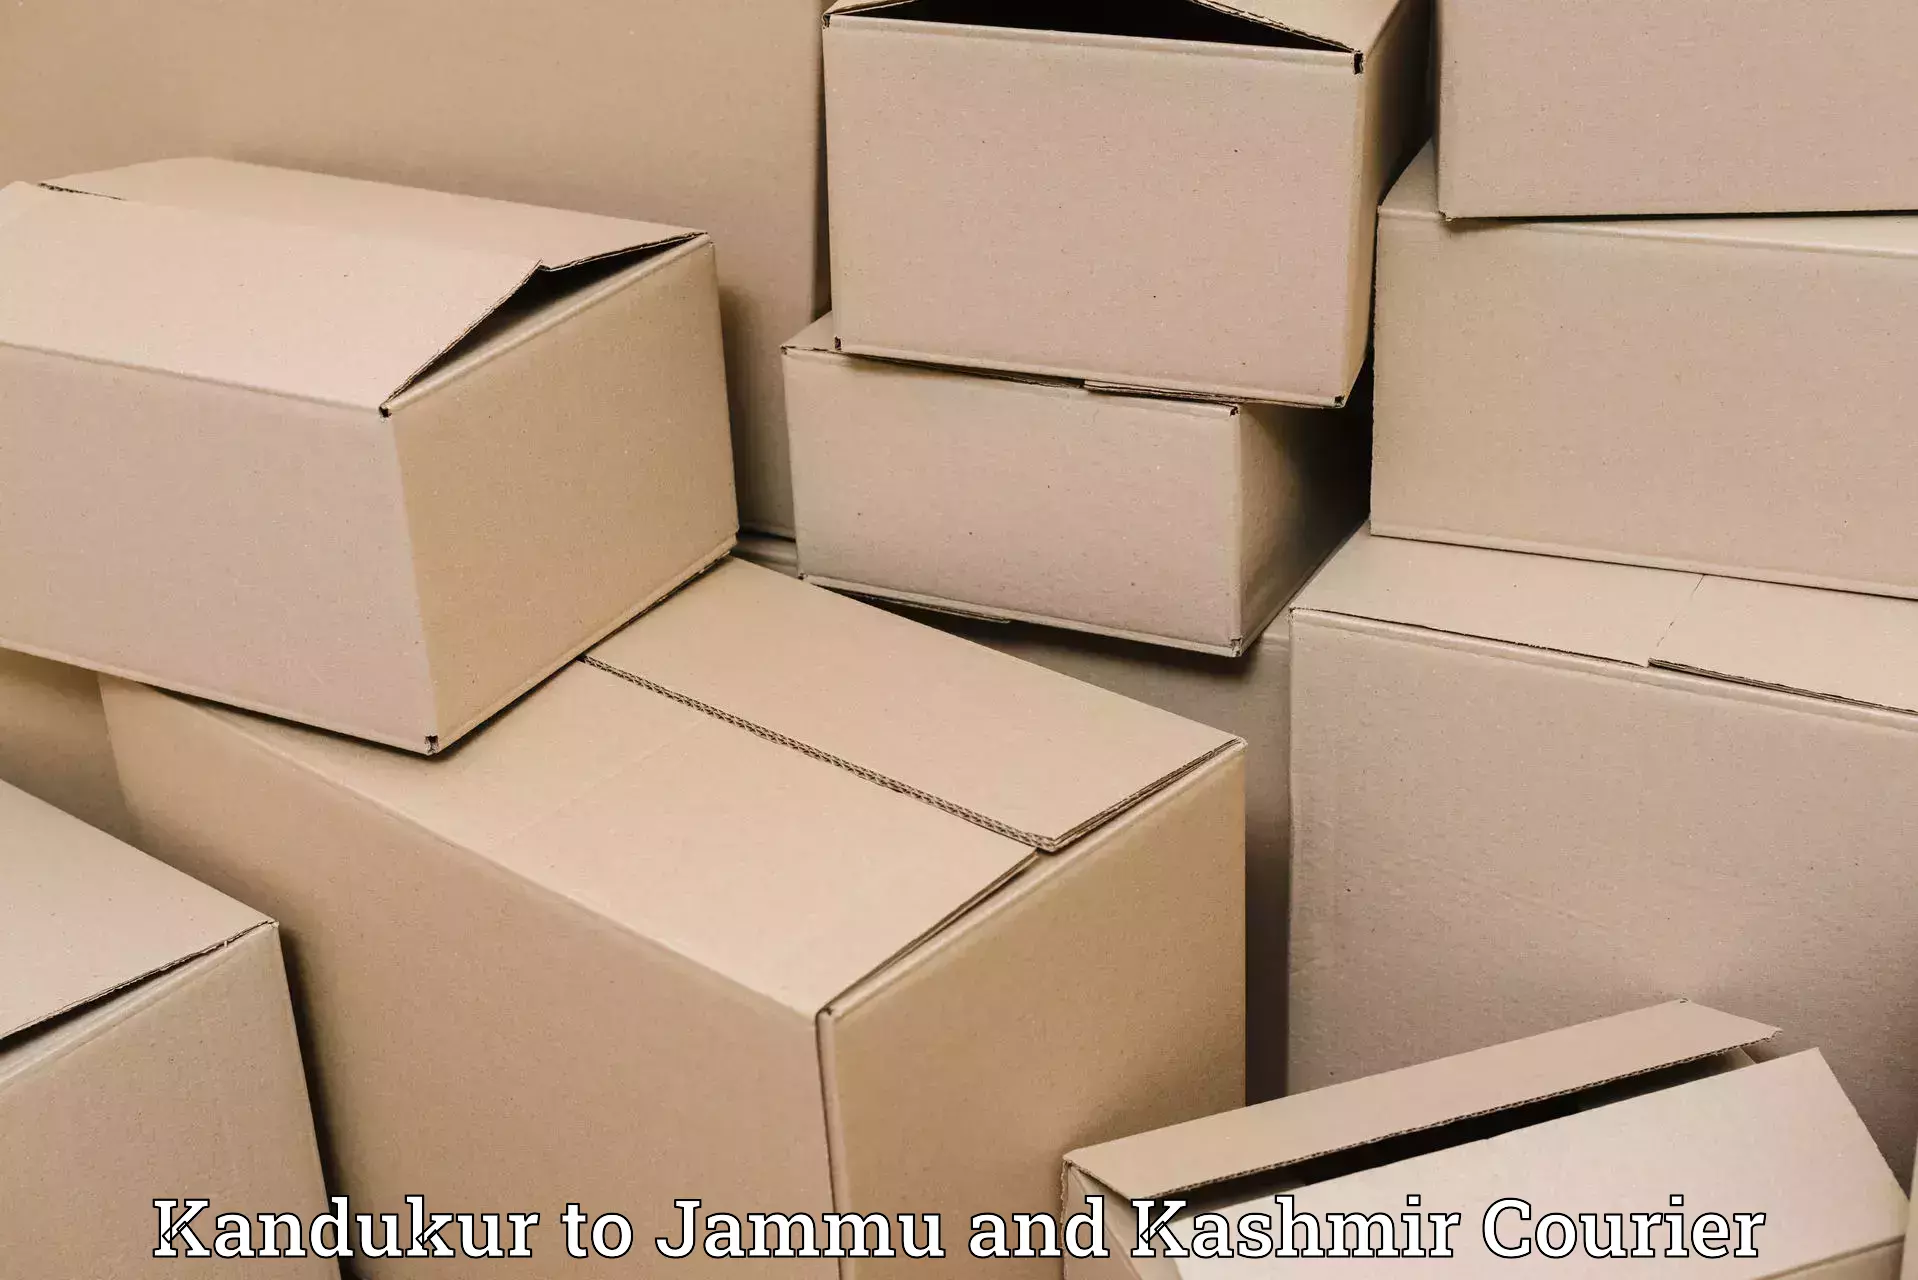 Efficient courier operations Kandukur to Srinagar Kashmir